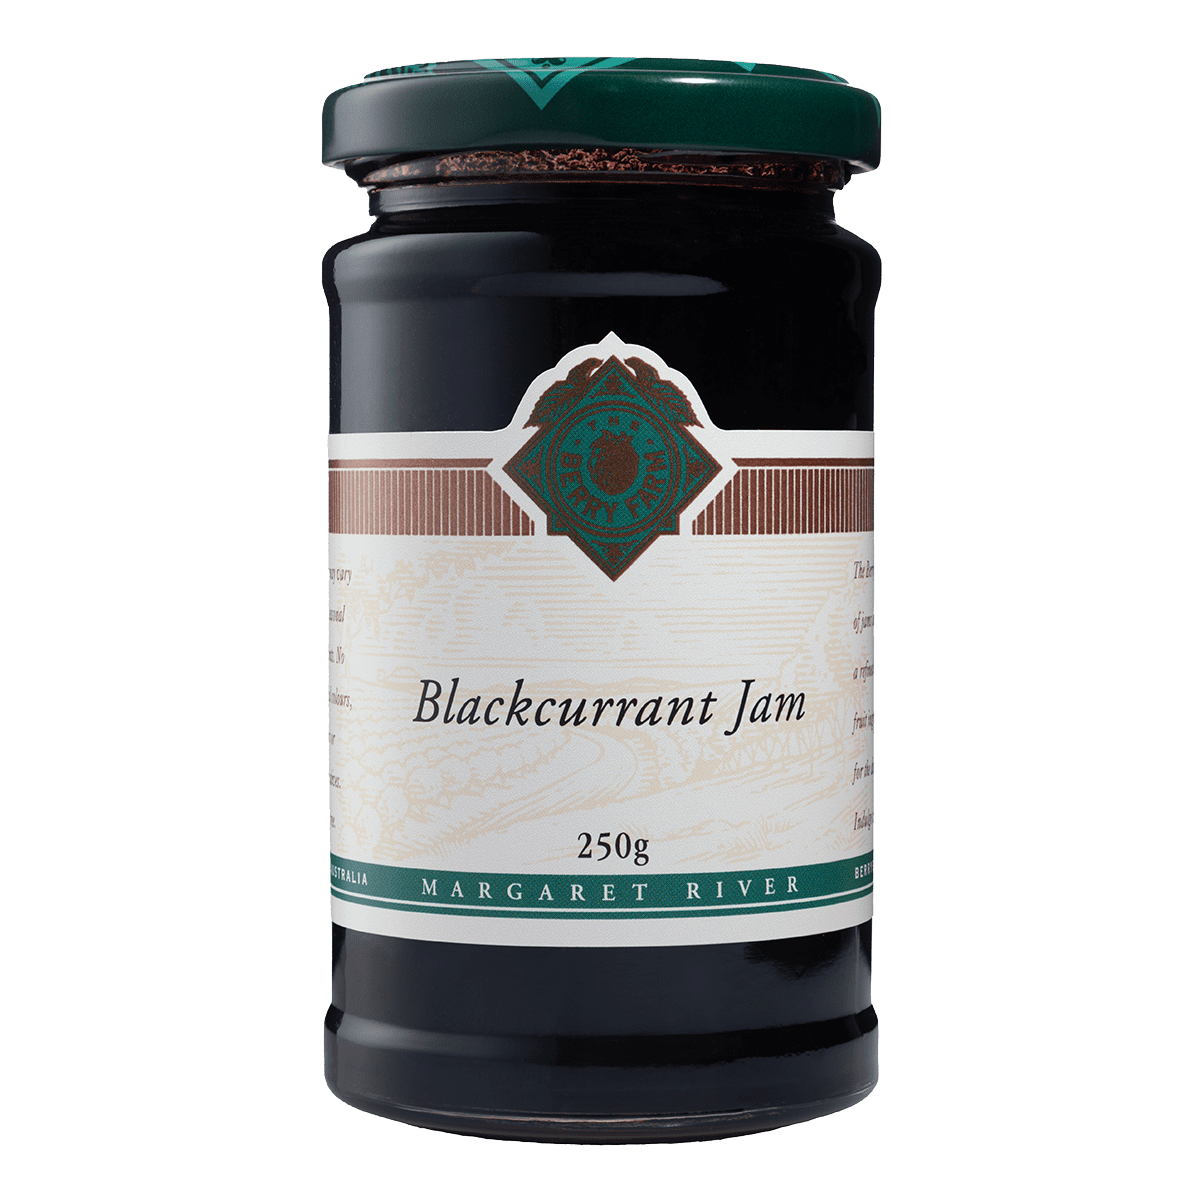 A jar of Blackcurrant Jam